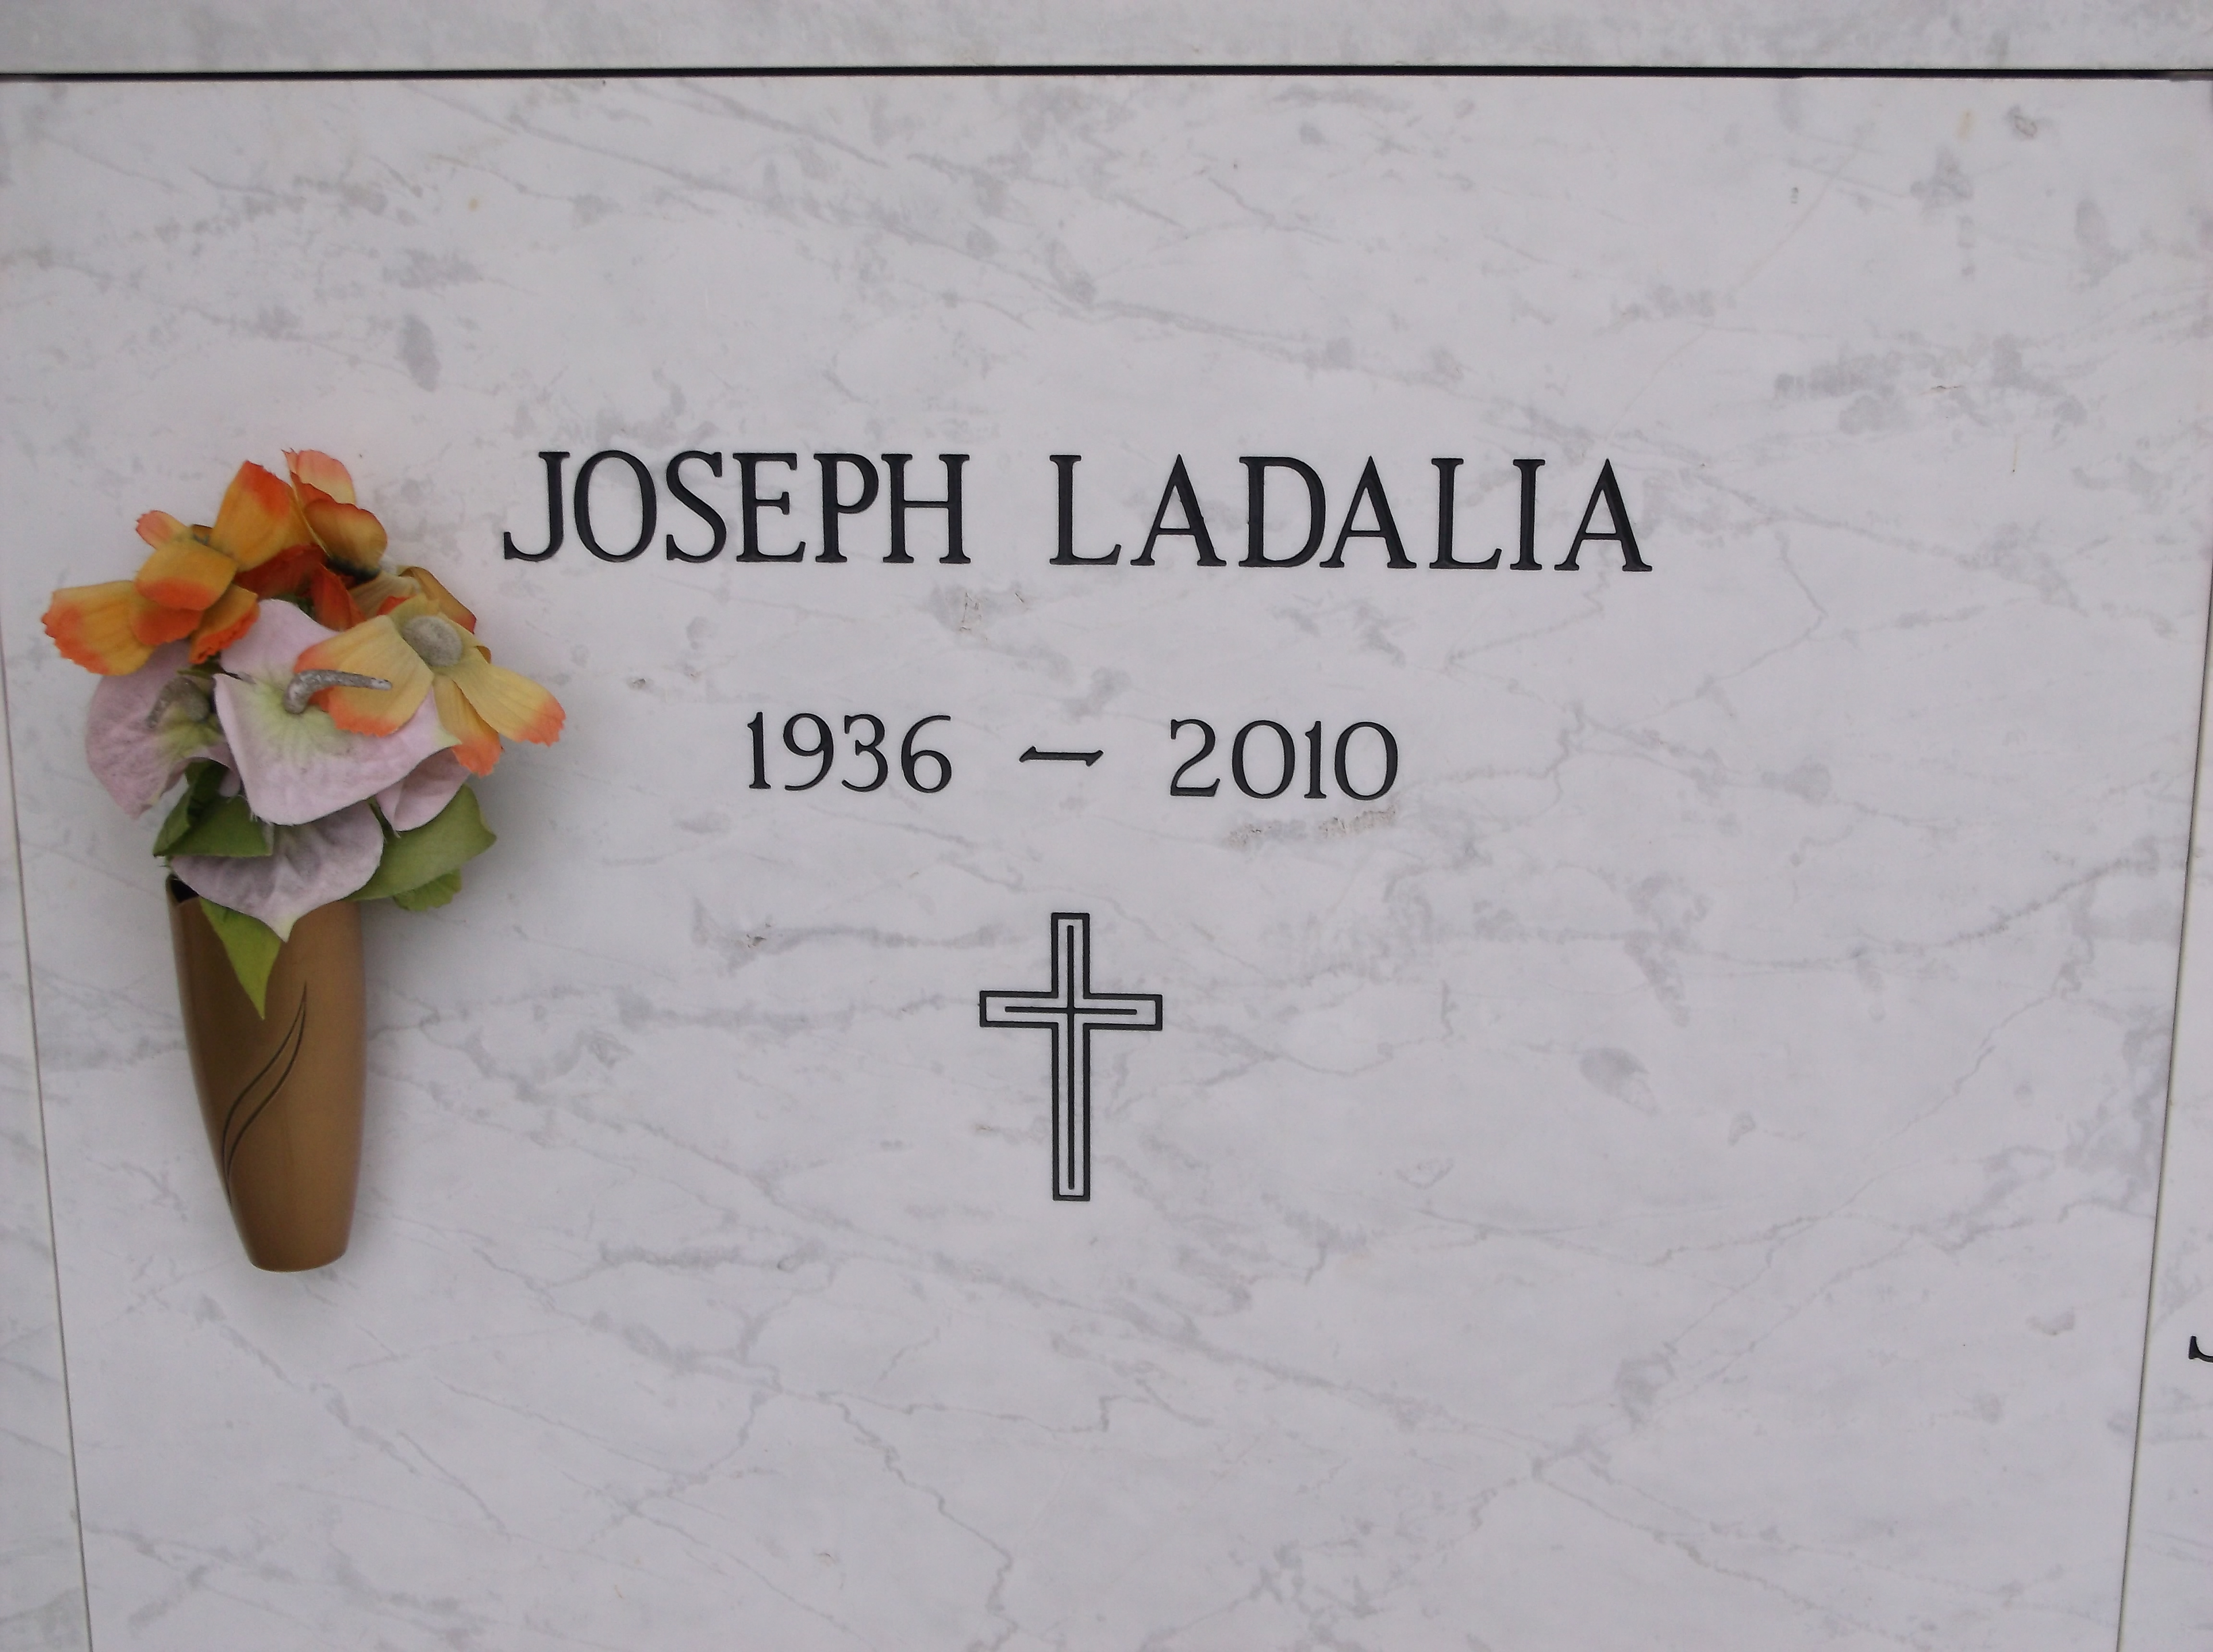 Joseph Ladalia